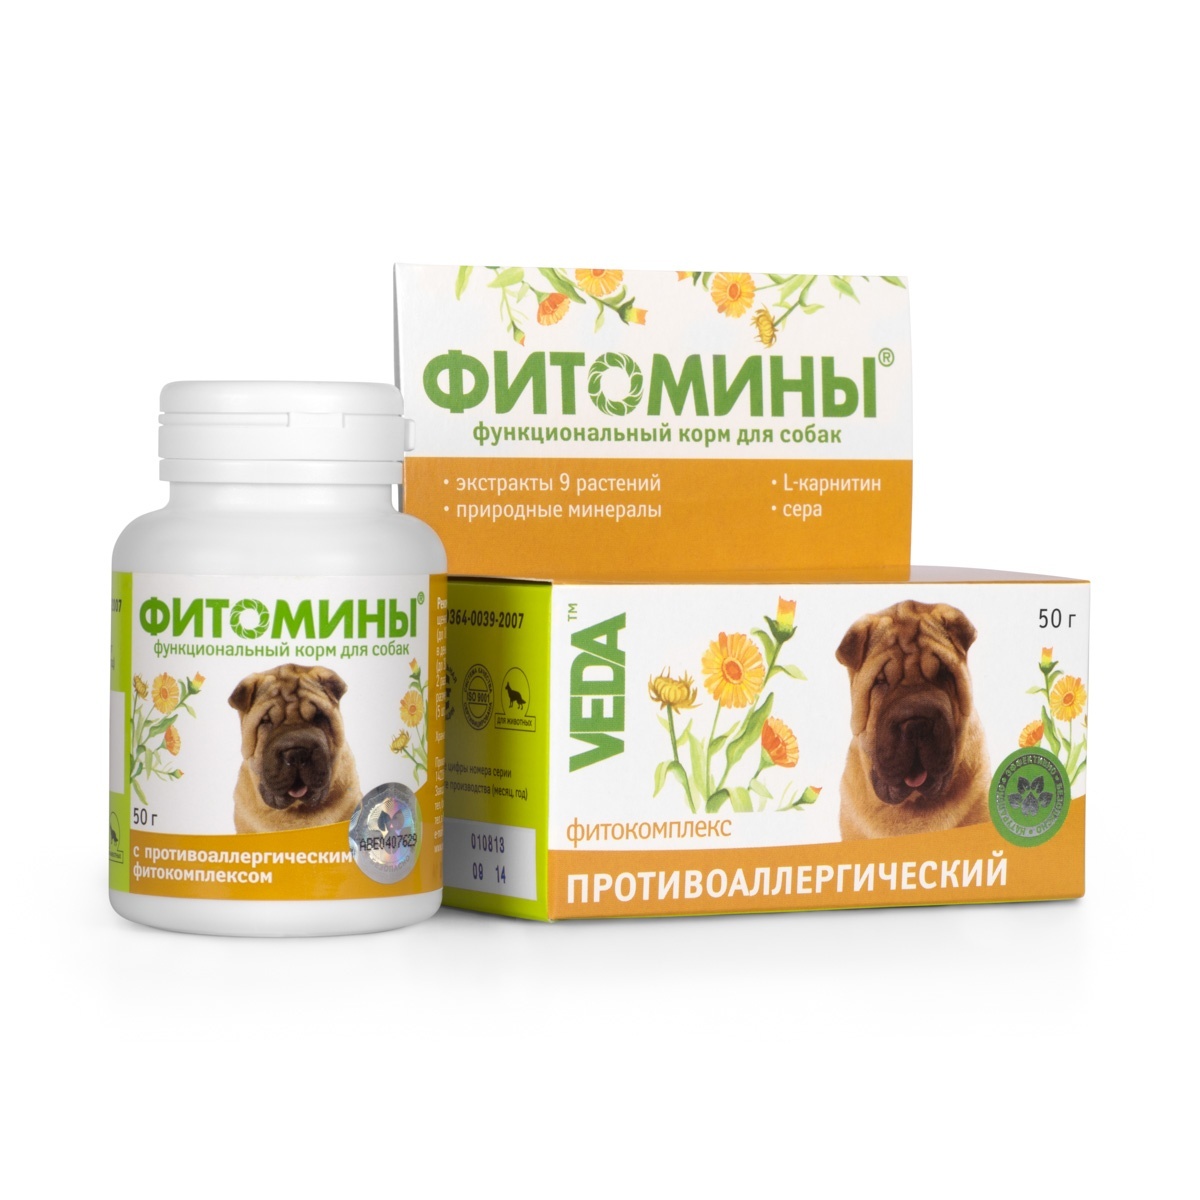 Веда Веда фитомины от аллергии для собак, 100 таб. (50 г) функционнальный корм веда фитомины для собак с фитокомплексом для шерсти 50 гр 100 таб